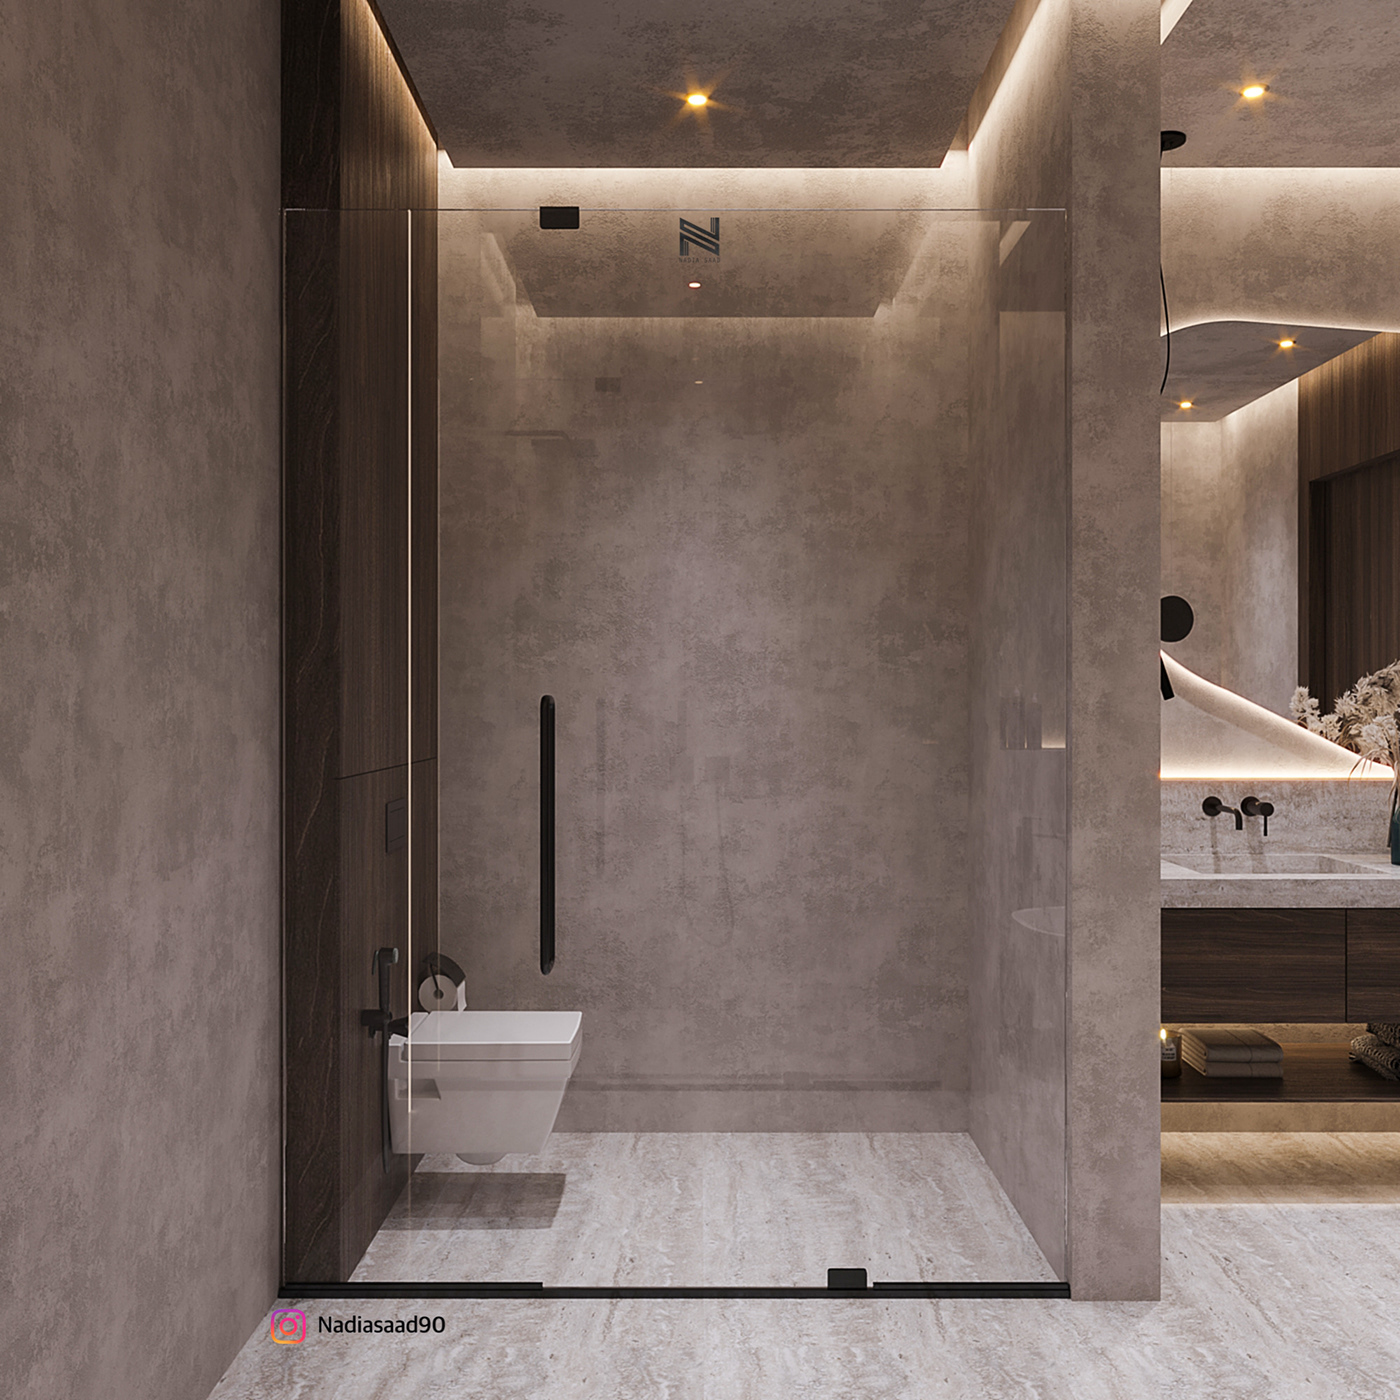 bathroom luxury nadia saad master bath